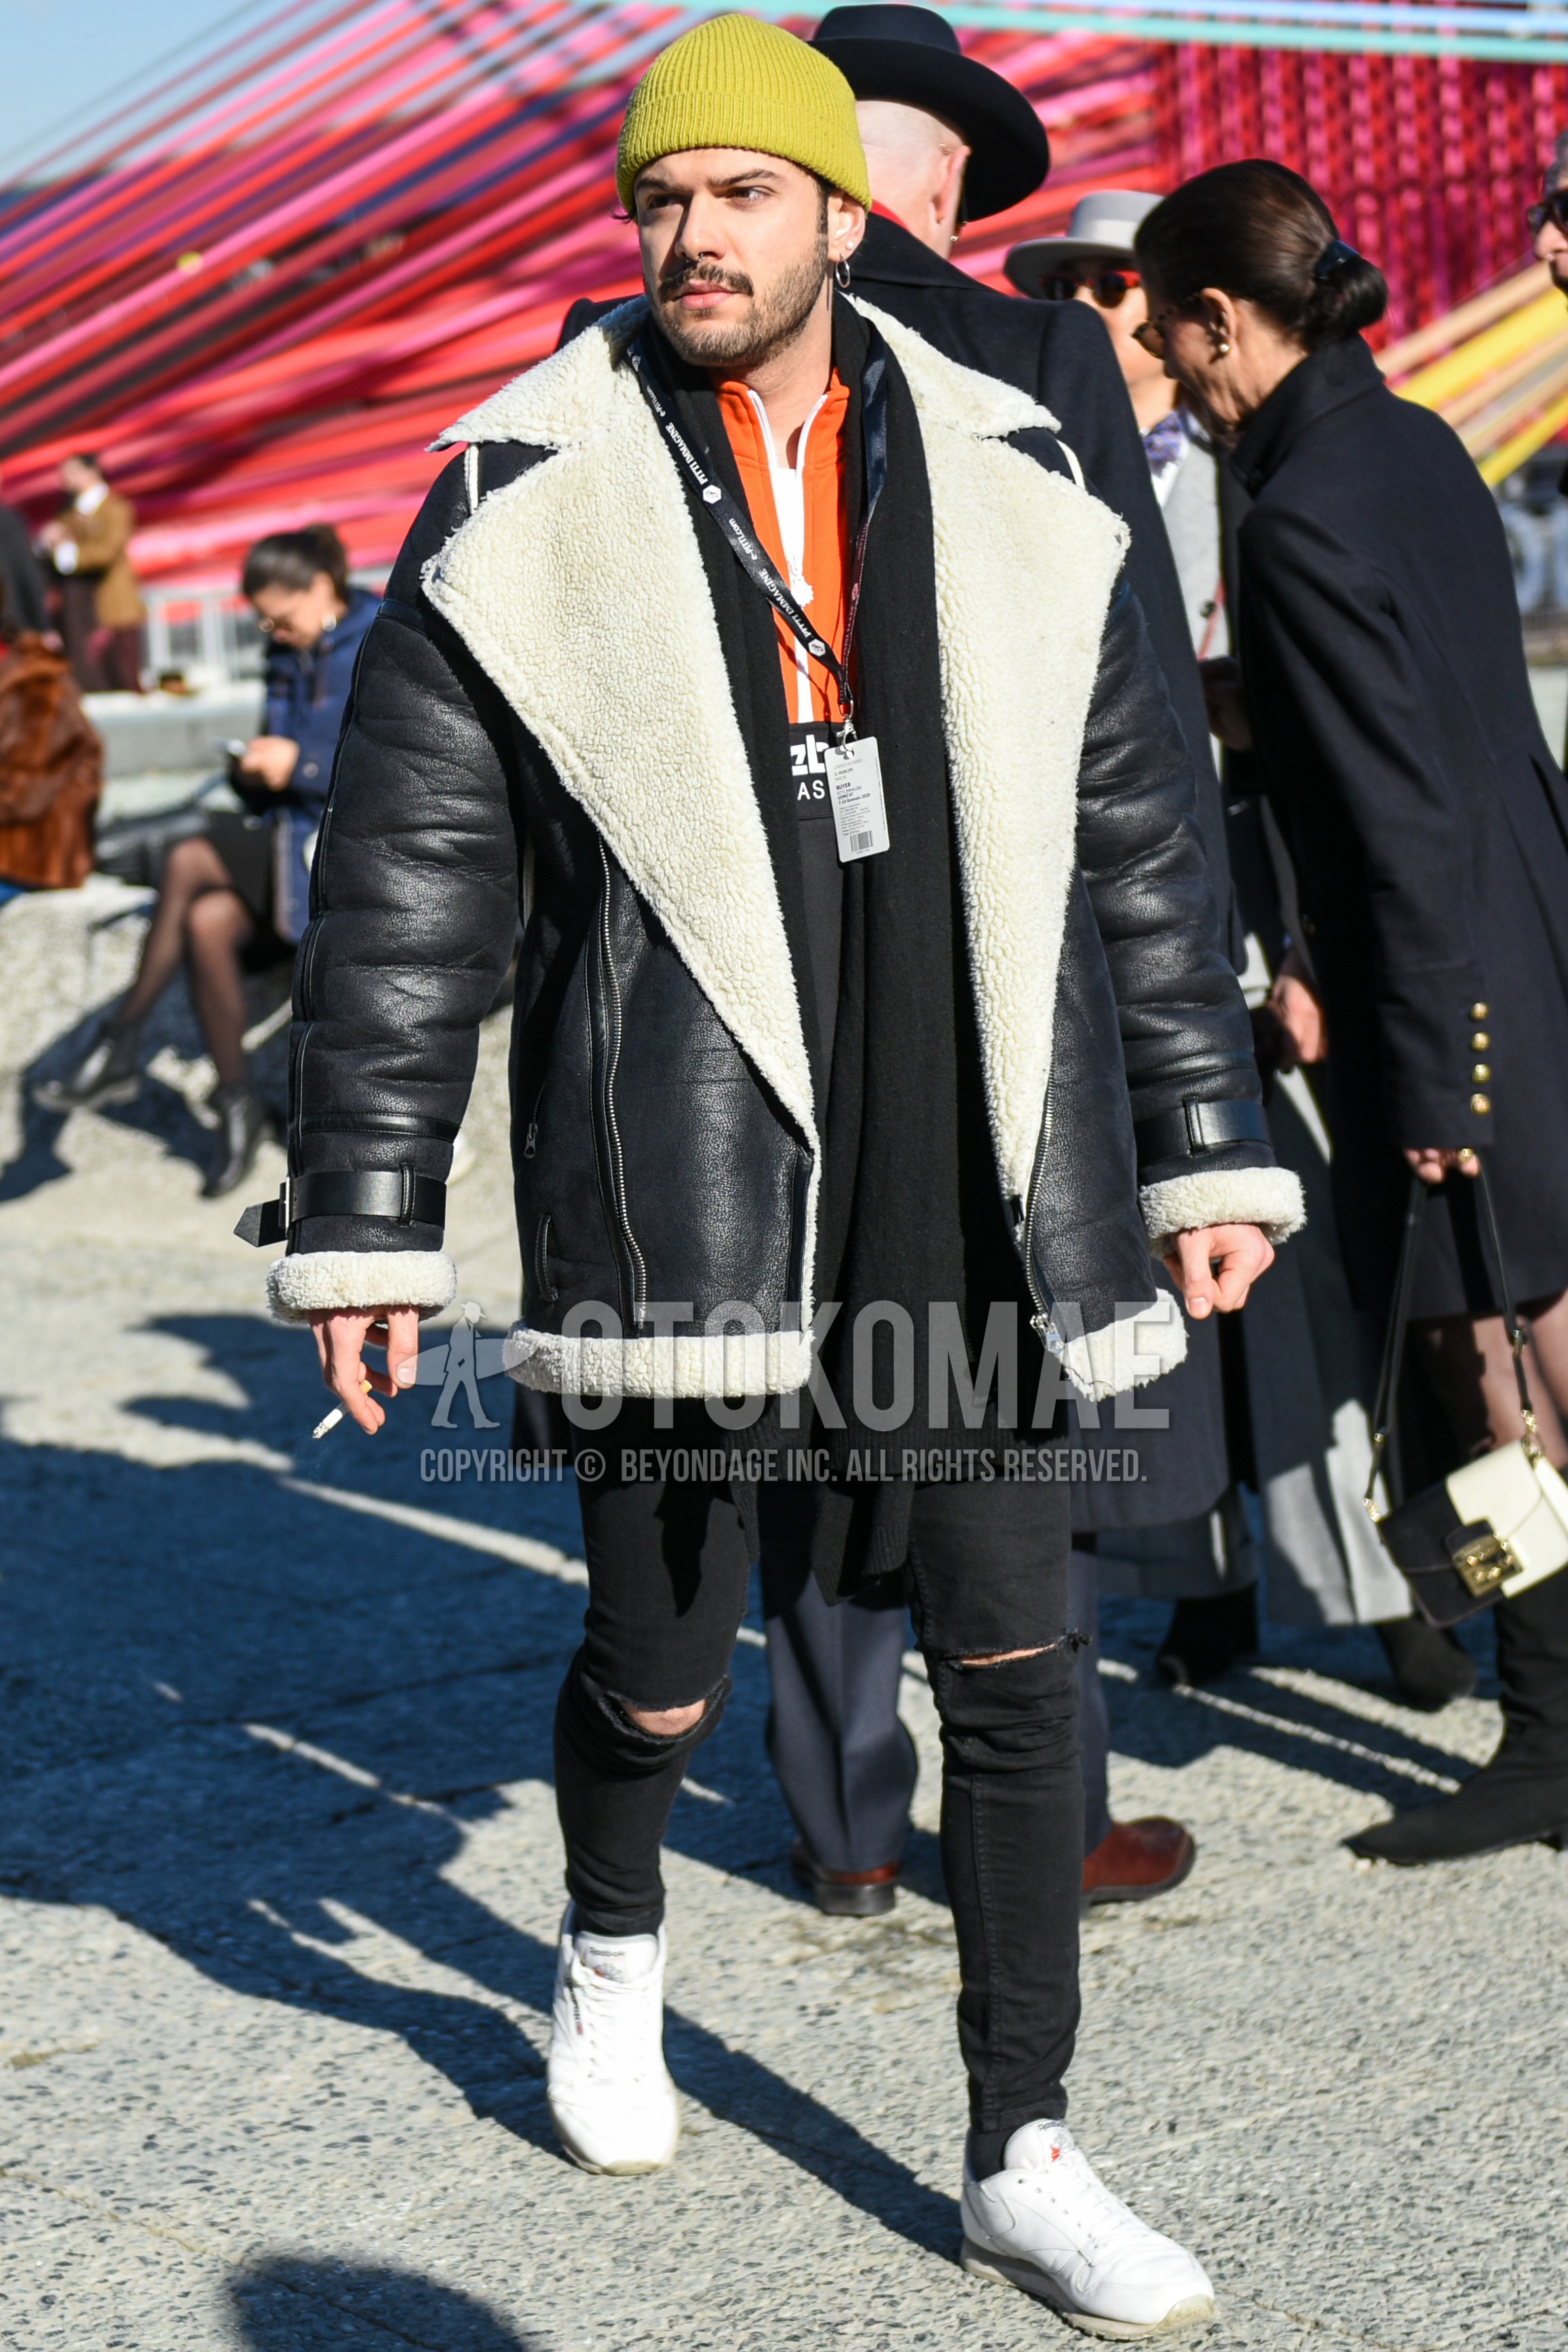 Men's autumn winter outfit with yellow plain knit cap, black plain scarf, black plain leather jacket, orange black plain windbreaker, black plain damaged jeans, white low-cut sneakers.